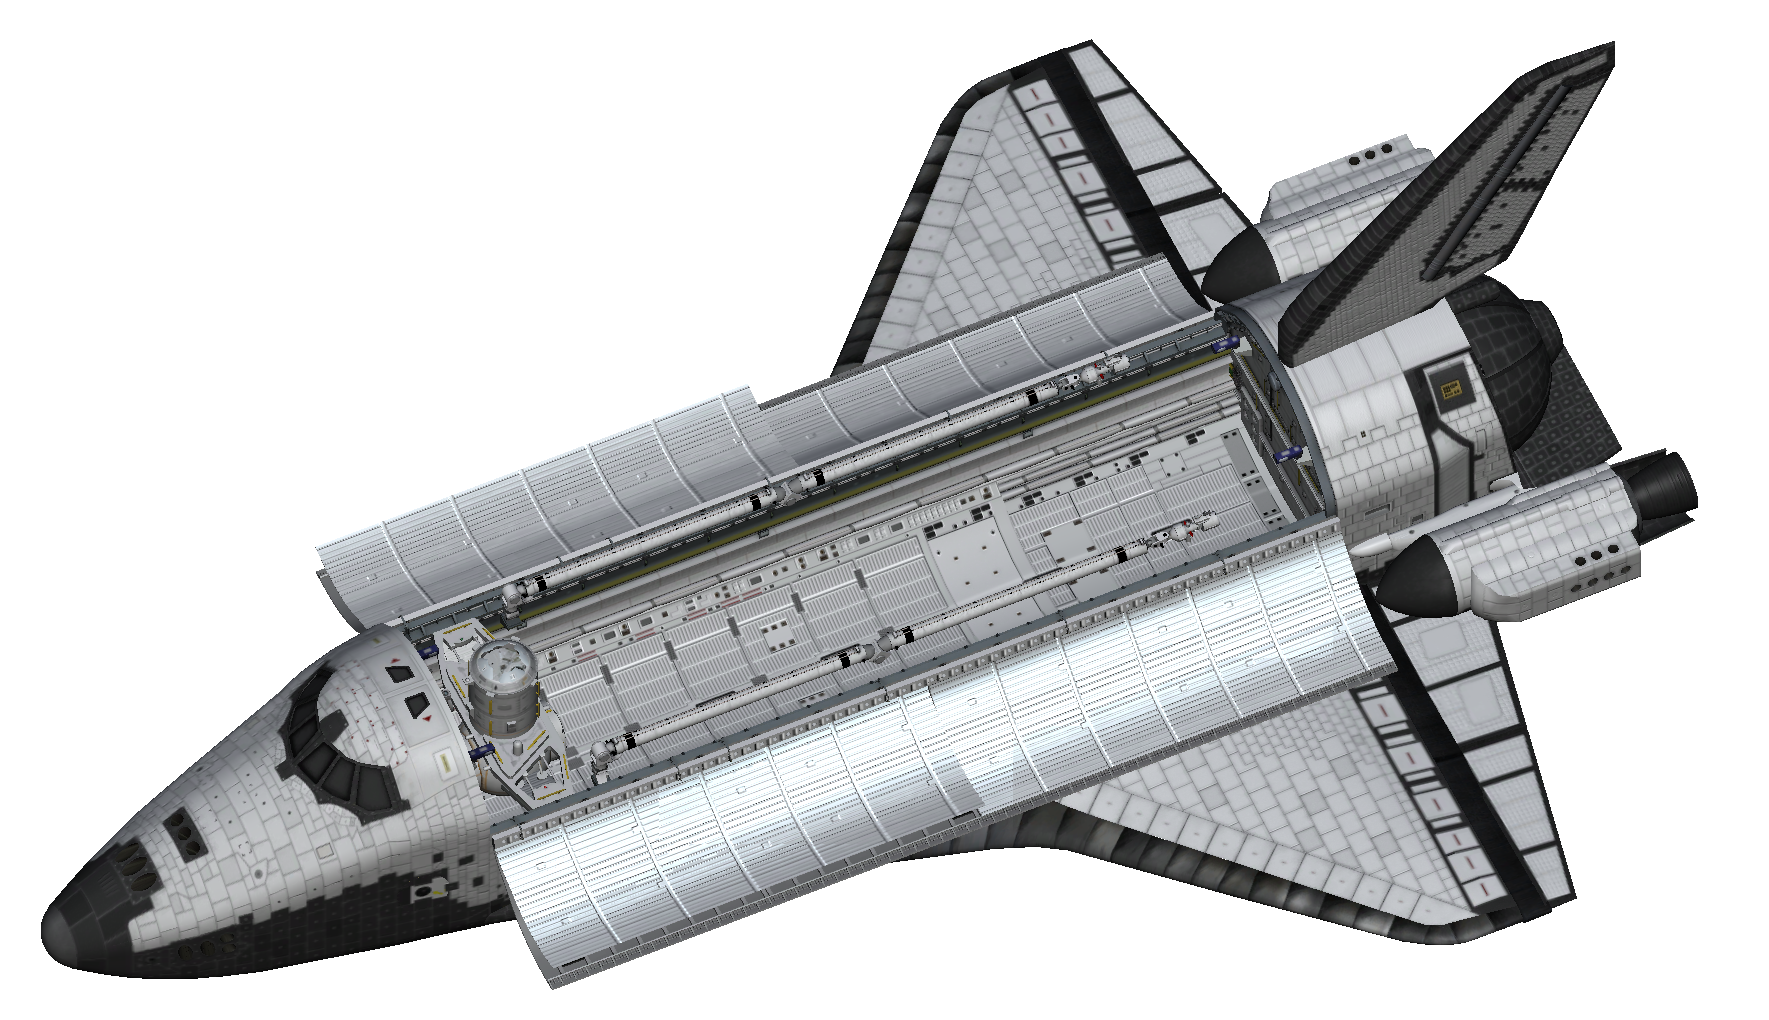 kerbal space program shuttle mod